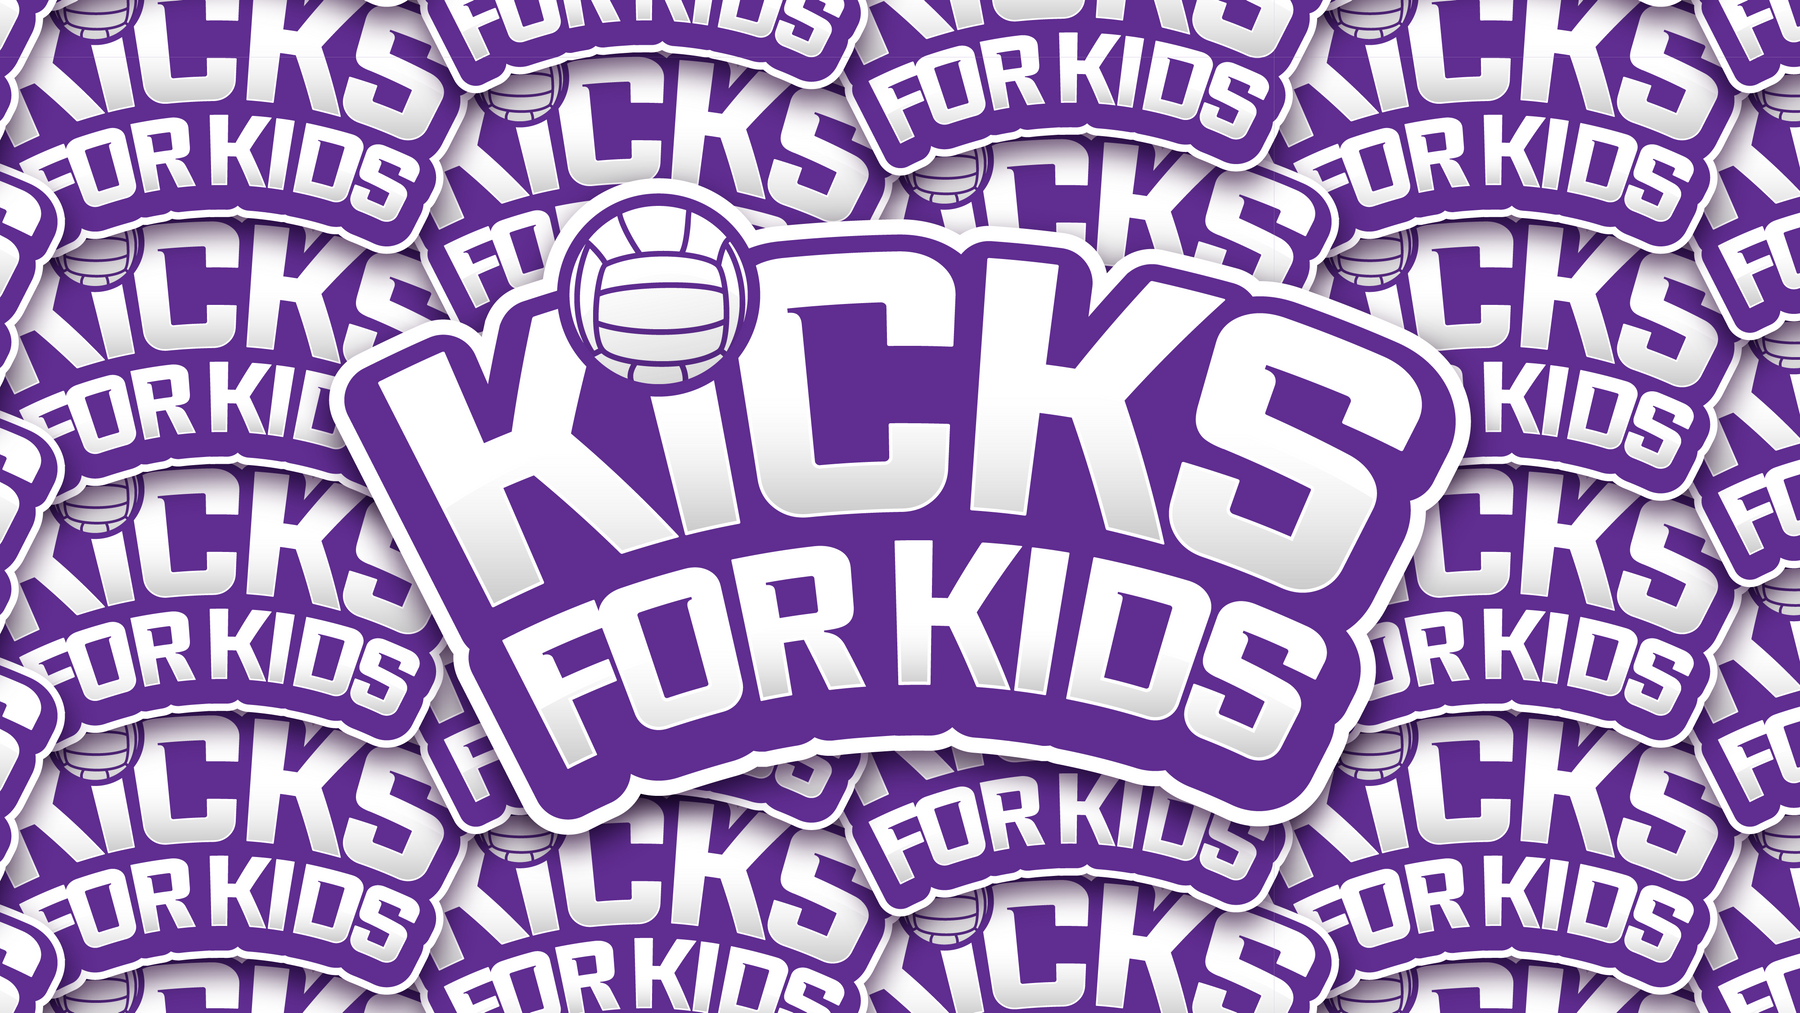 Kicks_For_Kids-04-2.png